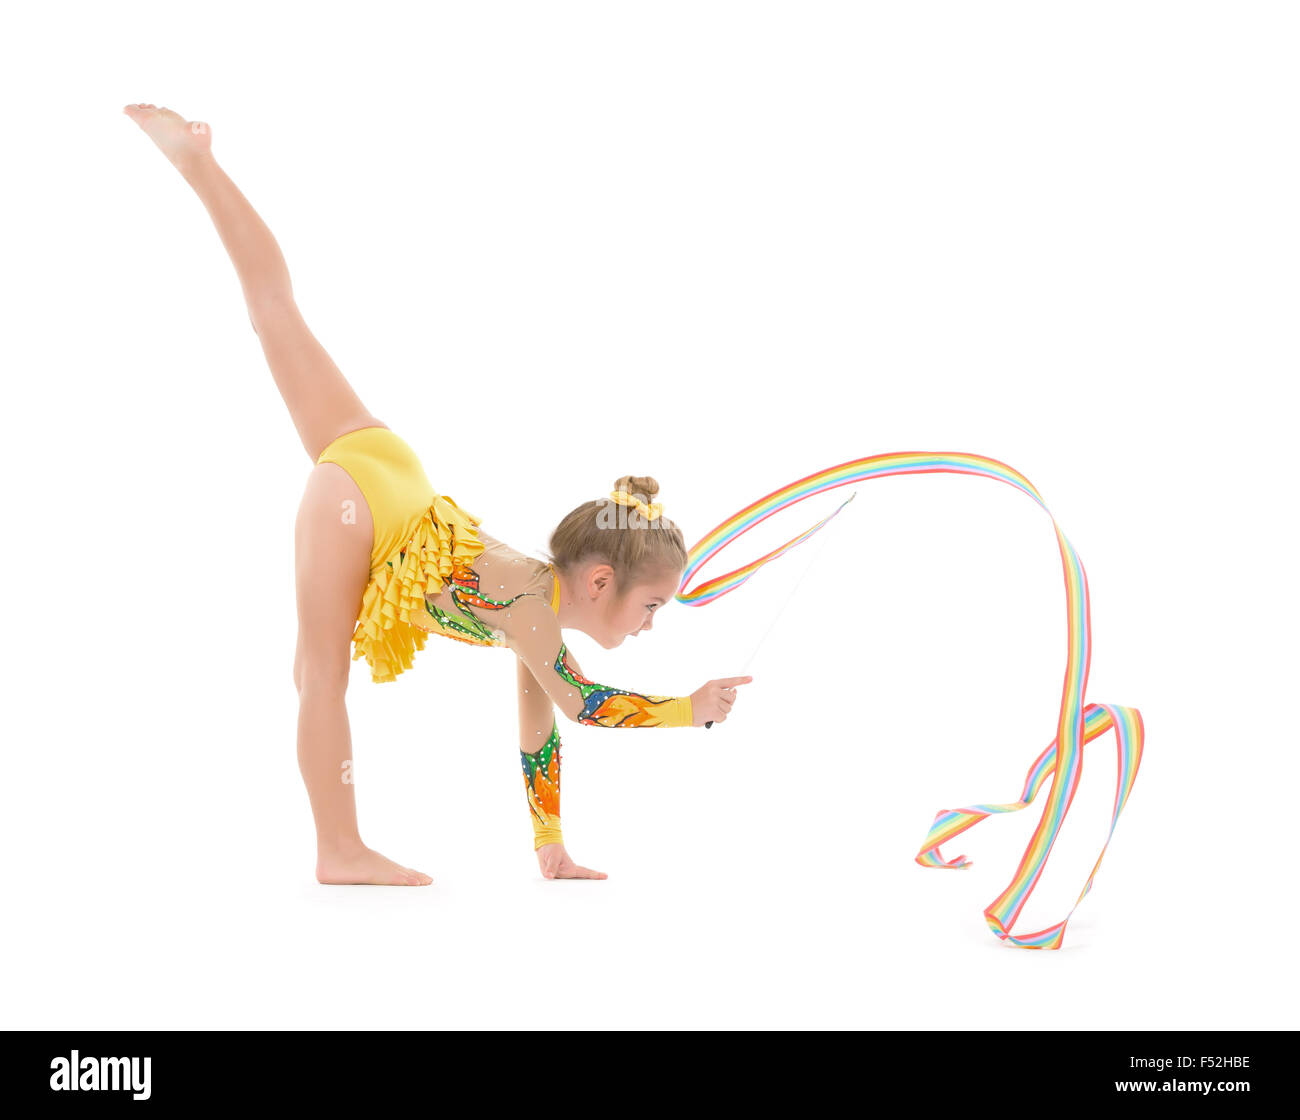 Gymnaste peu pratiquant avec un ruban, sur fond blanc Banque D'Images